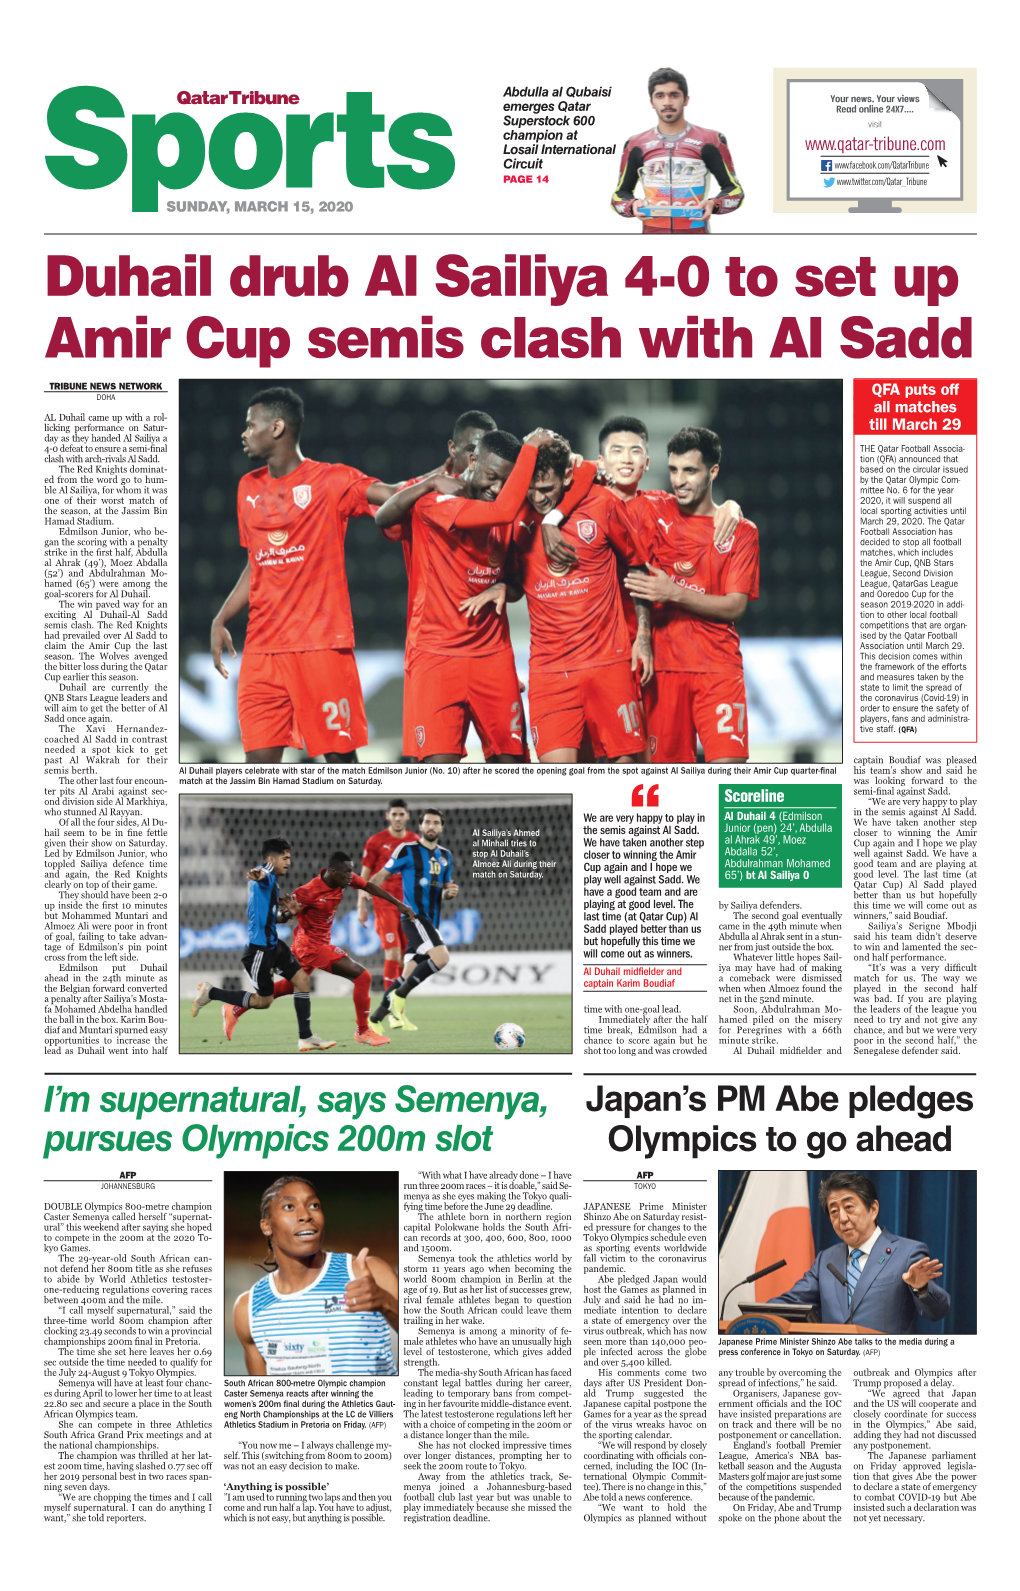 Duhail Drub Al Sailiya 4-0 to Set up Amir Cup Semis Clash with Al Sadd